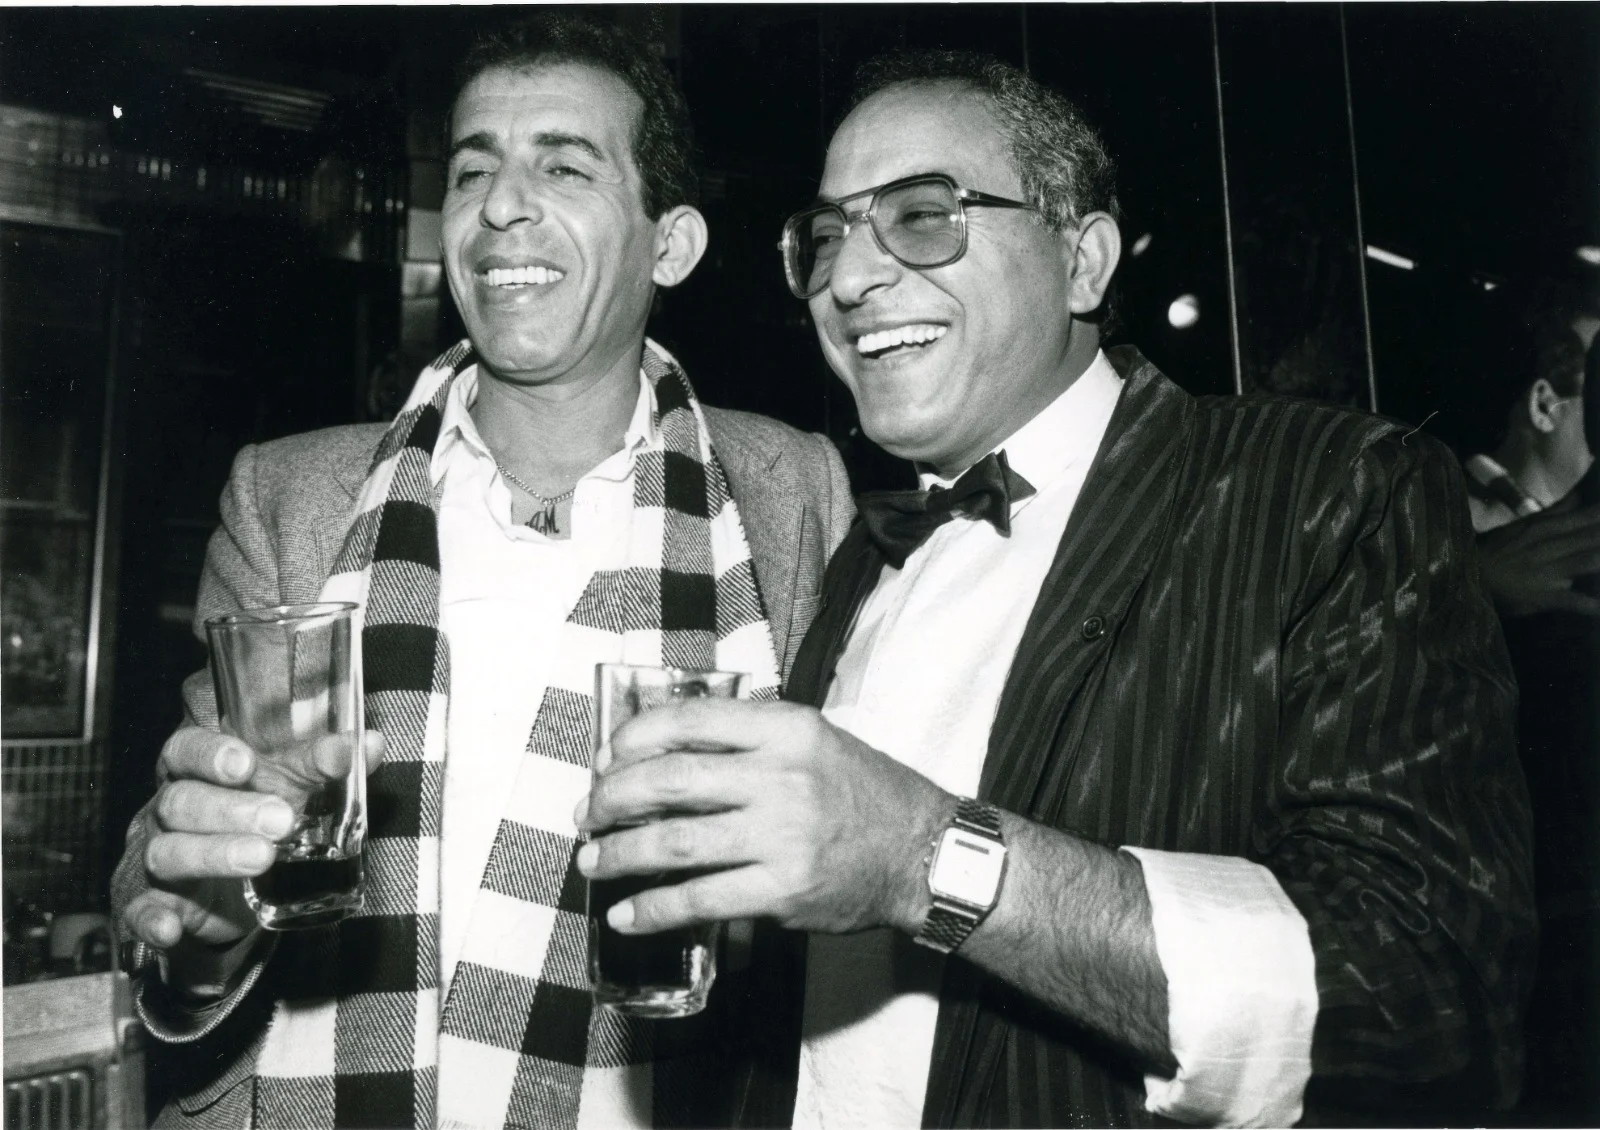 דקלון (מימין) מצולם לצד הזמר אביהו מדינה בשנות השמונים